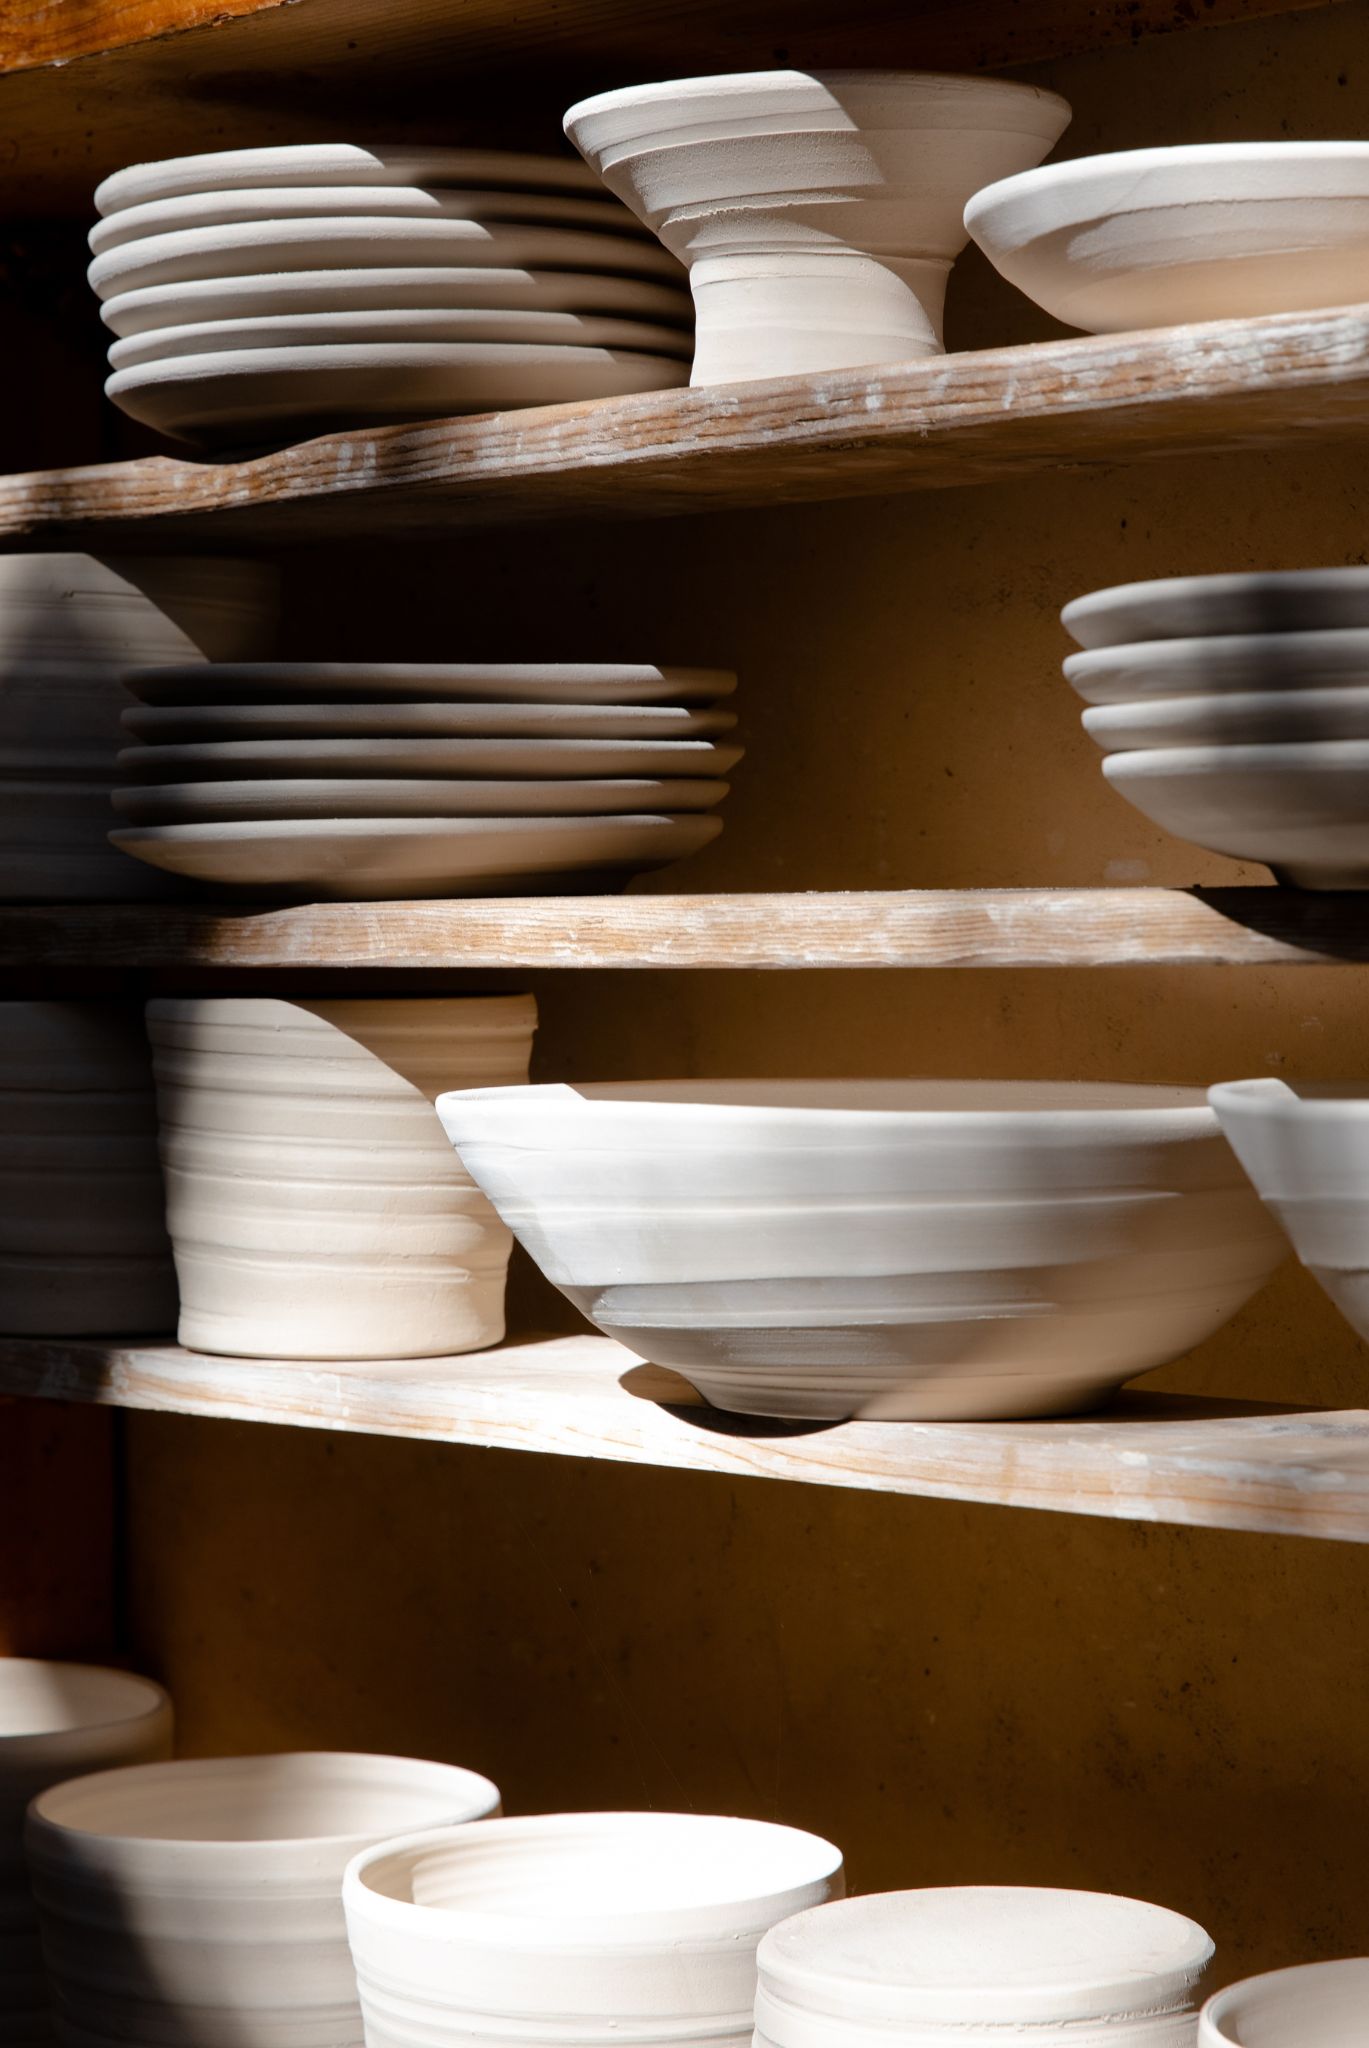 ceramics in the studio